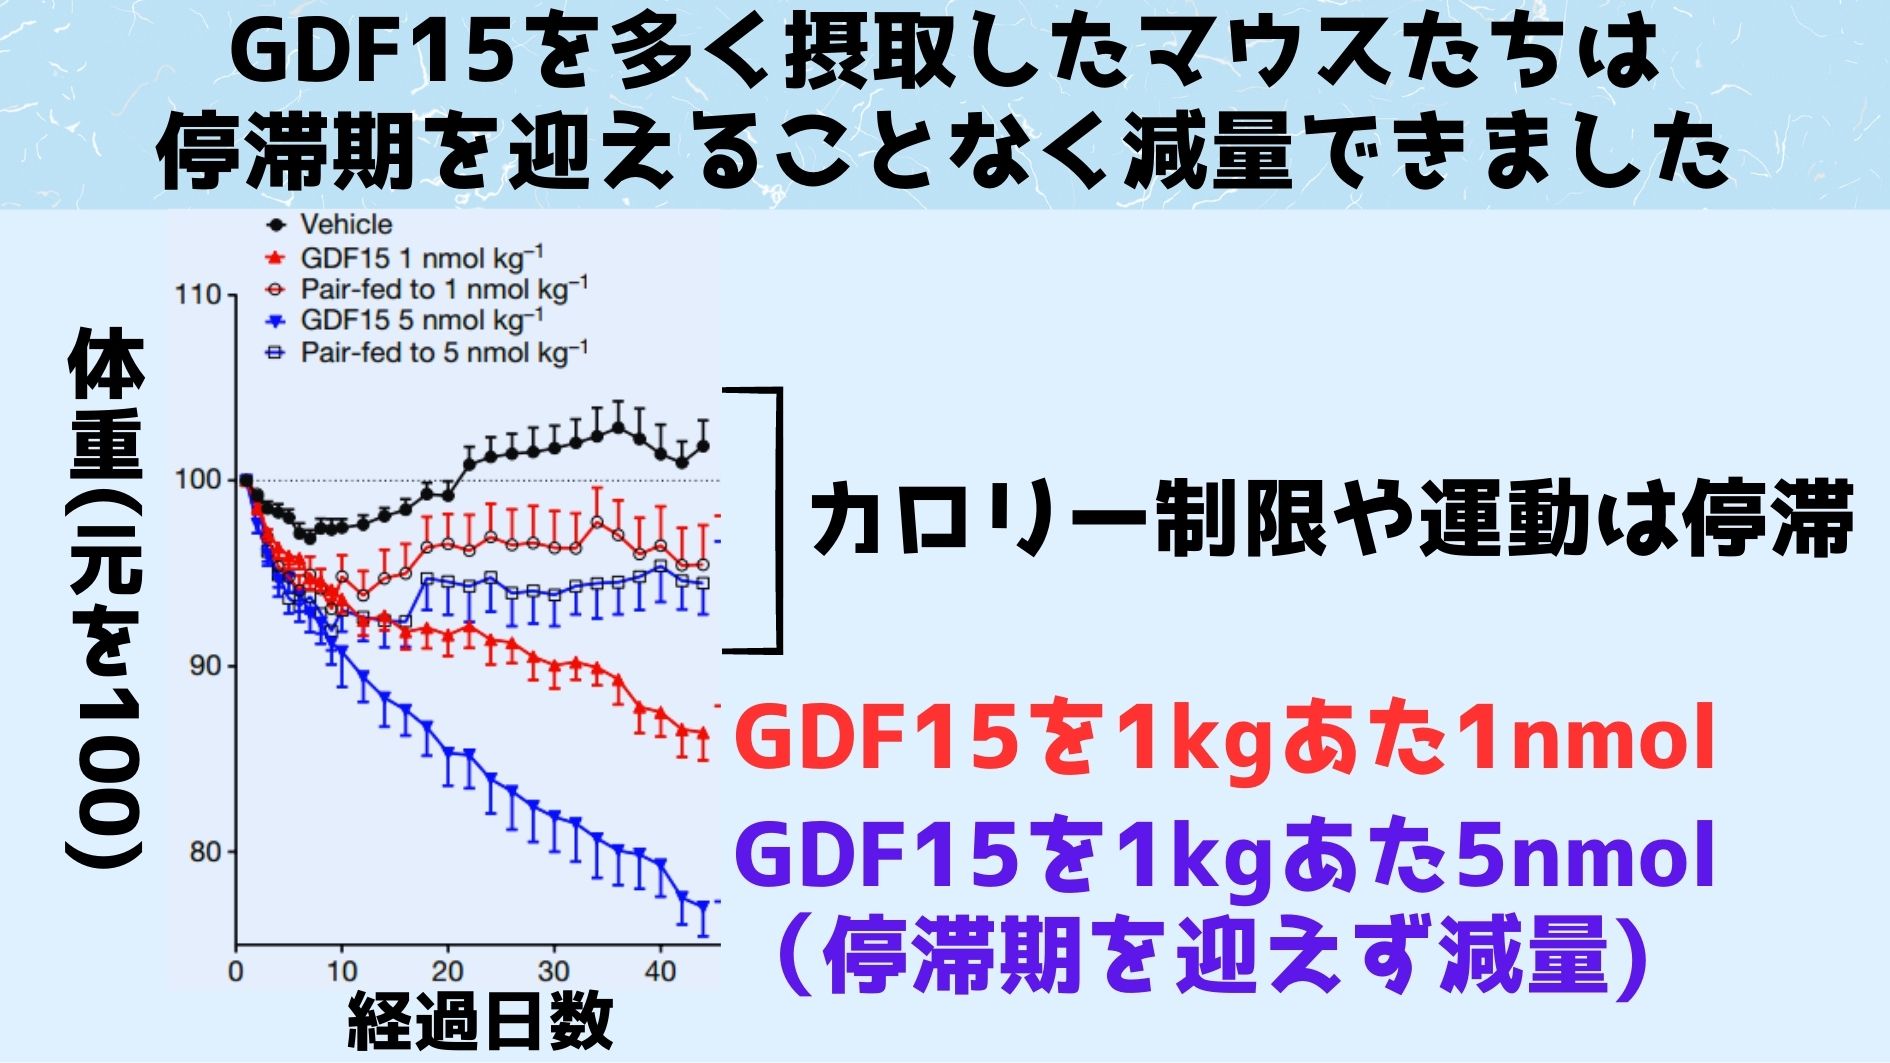 GDF15を日毎日1回注射されていたマウスたちは停滞期を迎えることなく体重が順調に減少